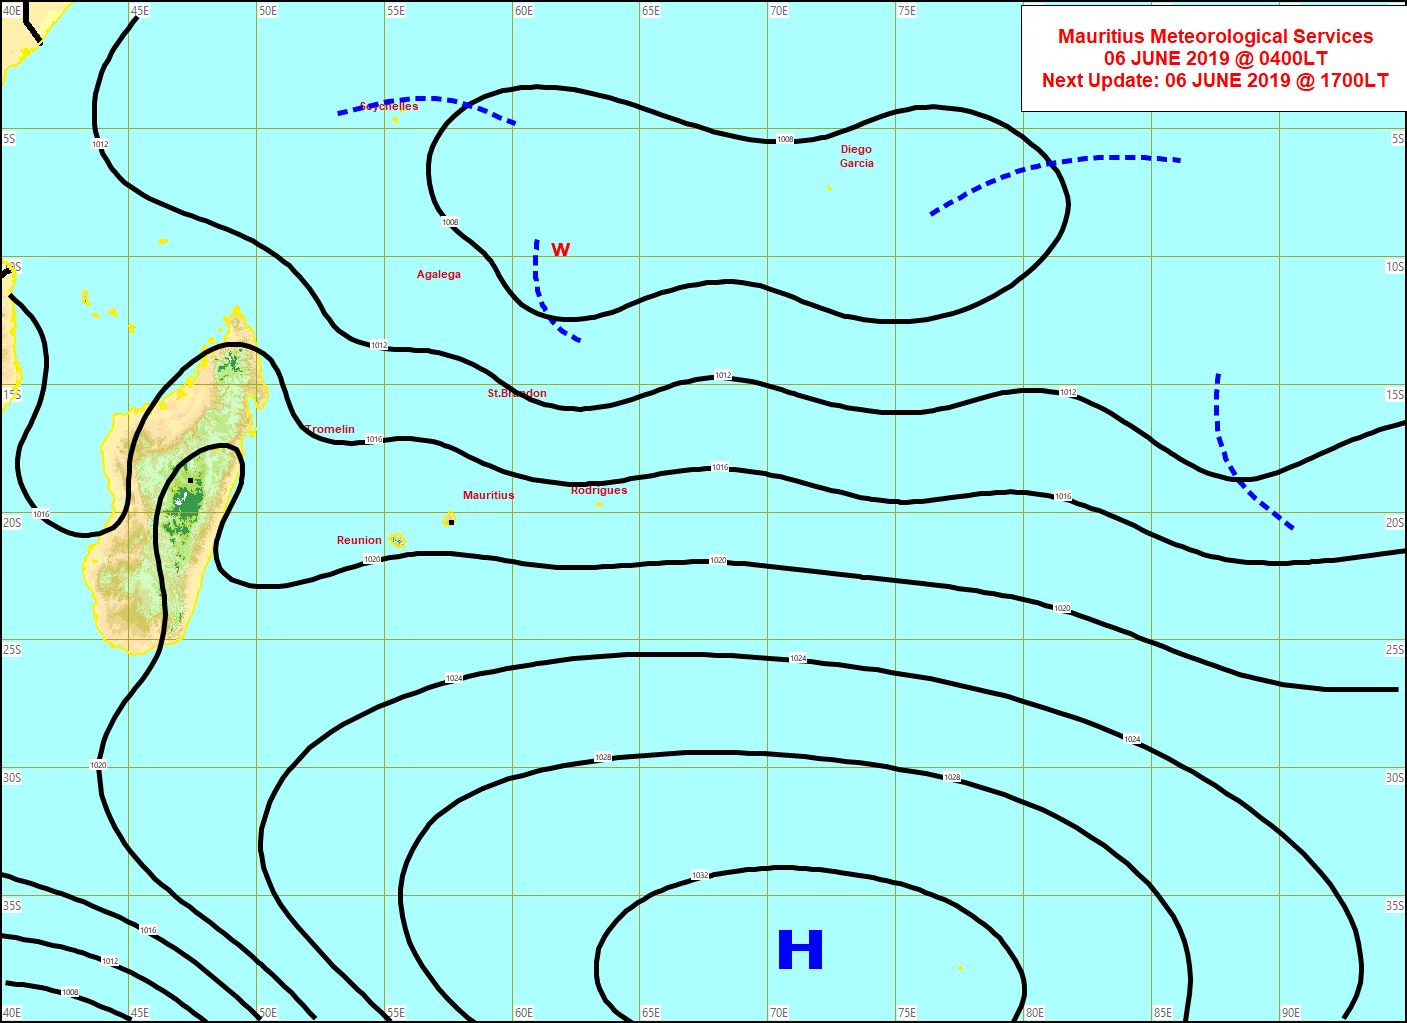 Analyse de la situation en surface à 4heures ce matin. L'anticyclone(H) s'éloigne lentement. Basses pressions relativement actives pour la saison entre Agaléga et les Chagos. MMS